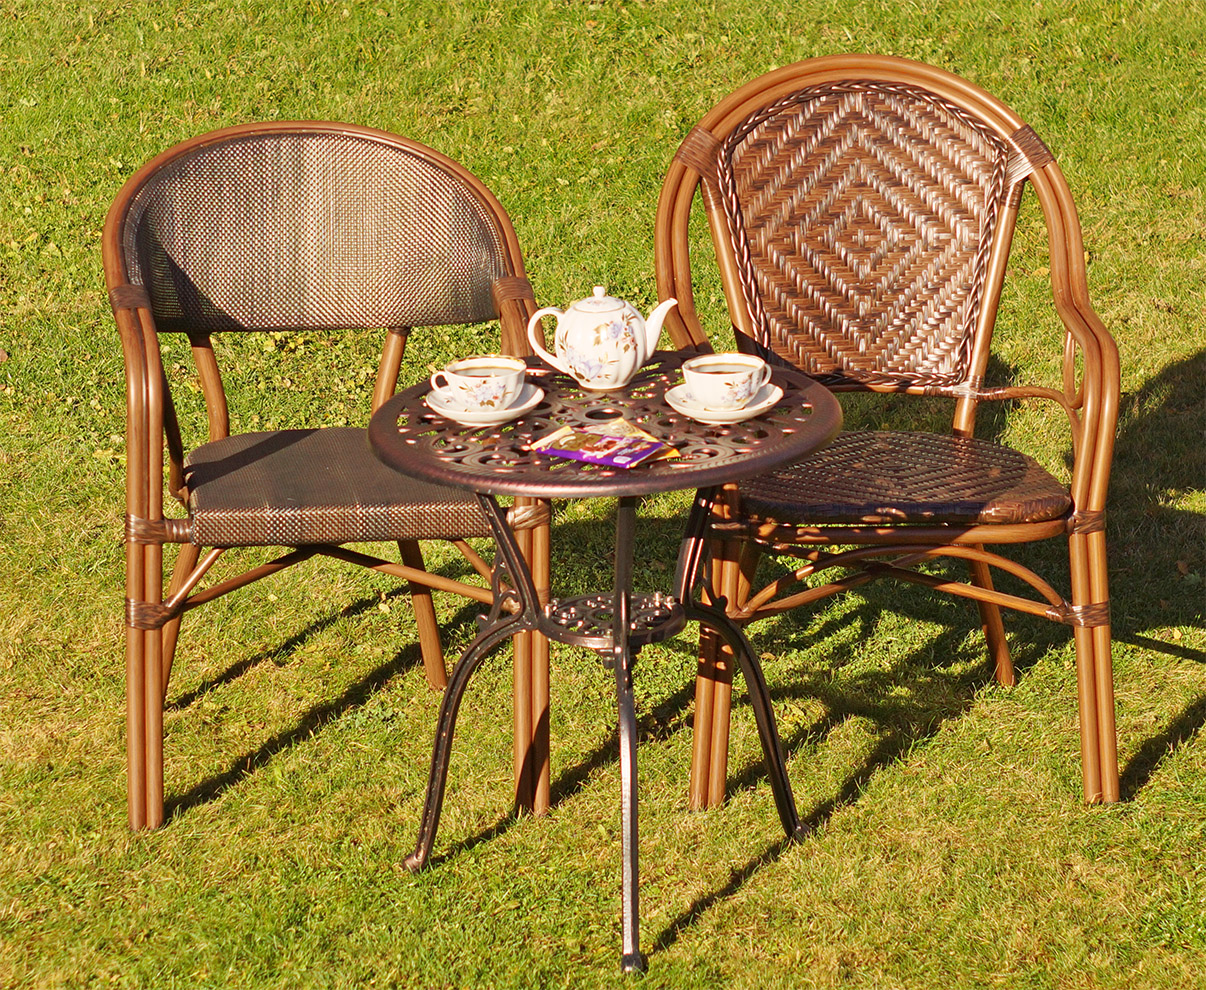 плетёные кресла для сада купить недорого, чайный комплект стол и стулья на террасу и в беседку, фабрика садовой мебели, кованый стол со стульями для дачи